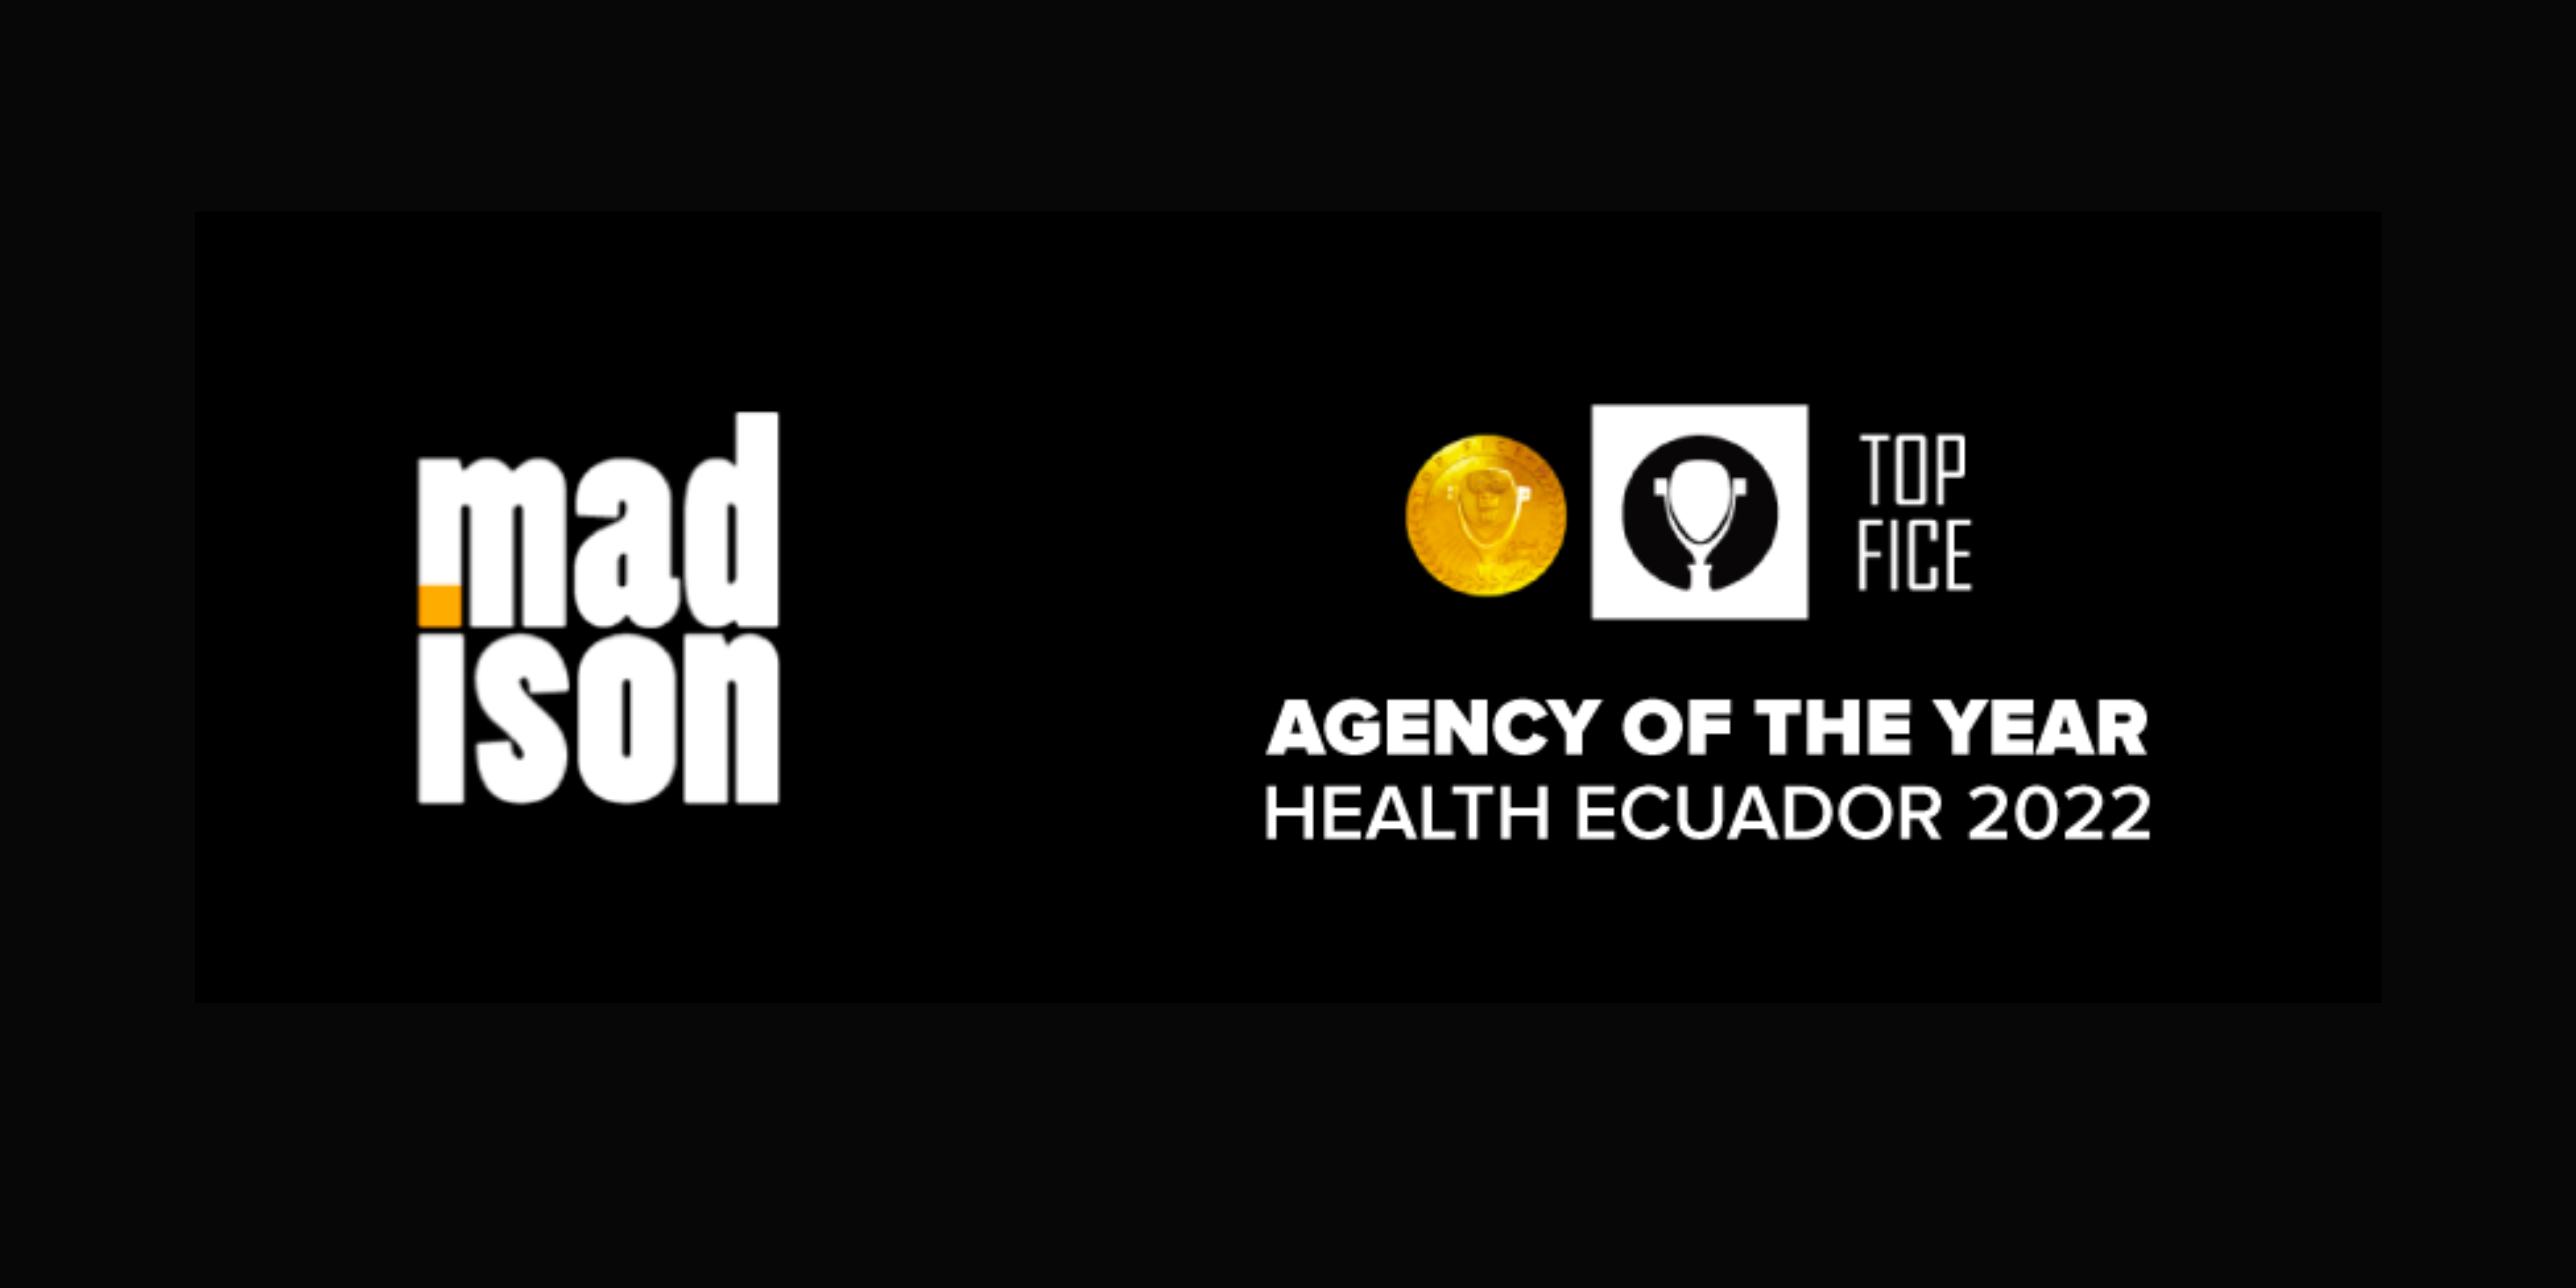 Madison Agencia de Publicidad & Marketing, se posiciona como “Agencia del Año” a  nivel internacional